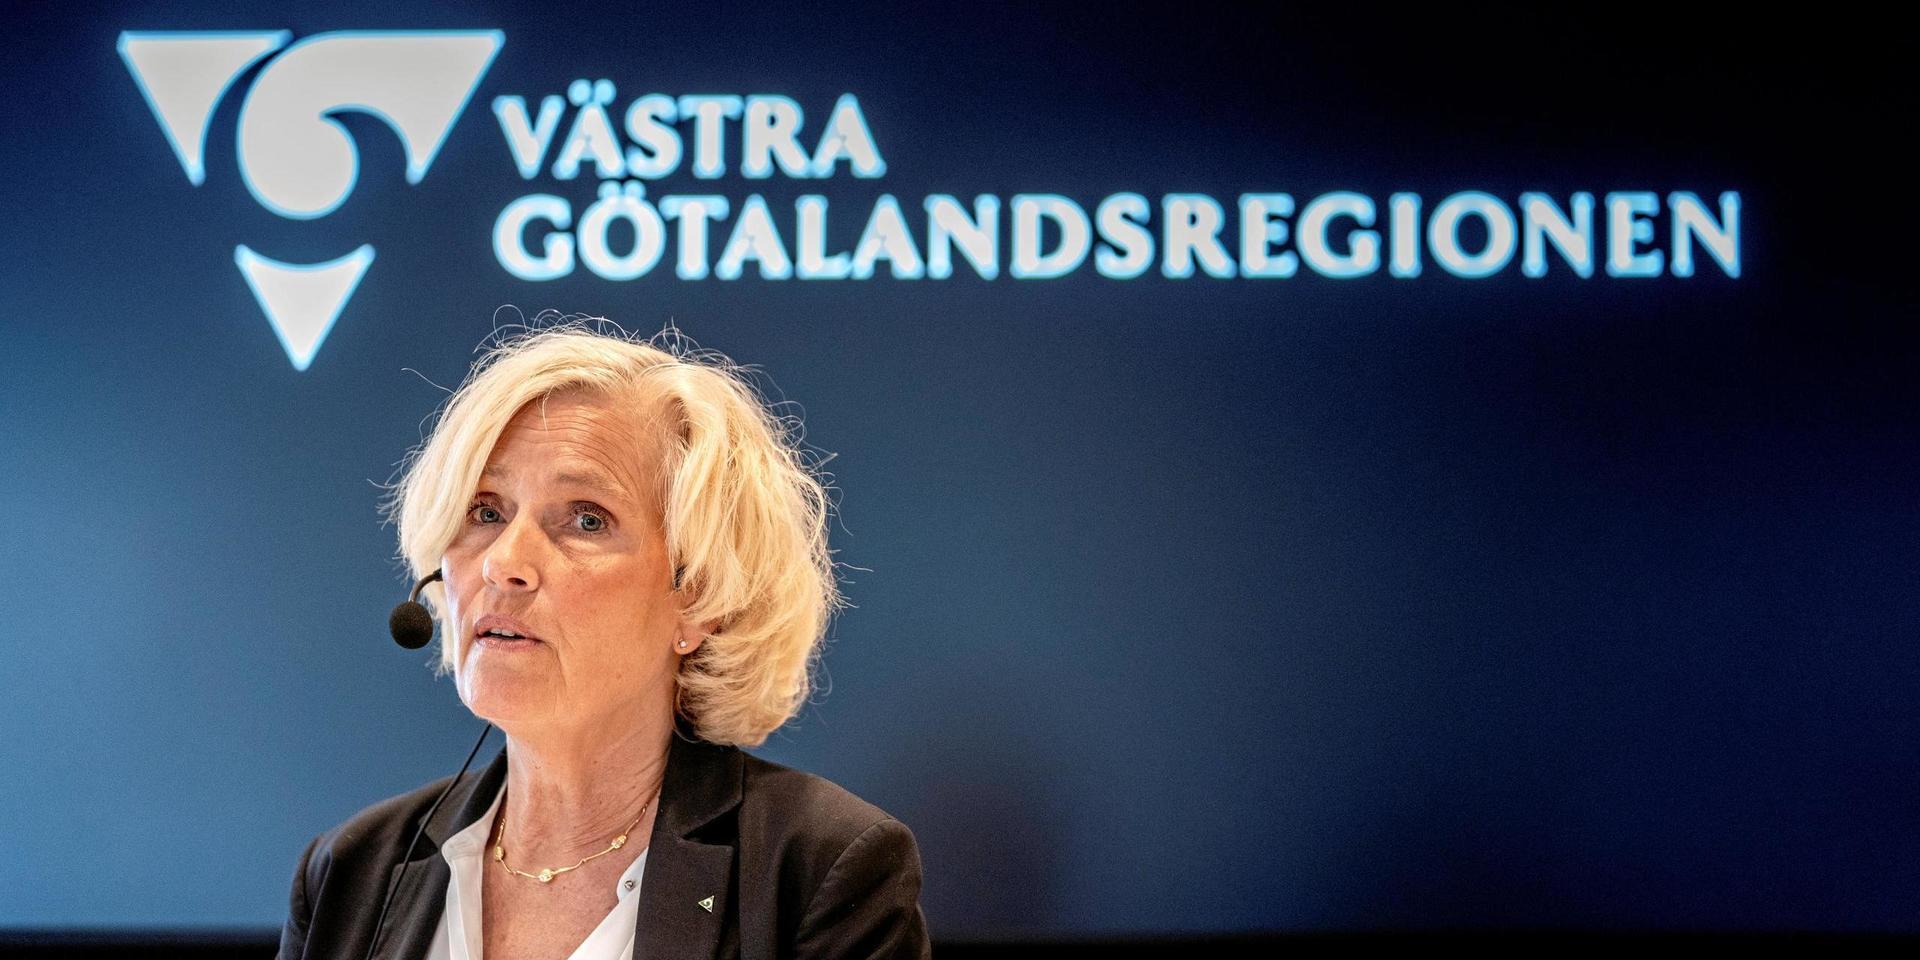 Ann Söderström, hälso- och sjukvårdsdirektör, är den som fattar regionala beslut i covid-19-frågor: ”Det är viktigt att hitta långsiktiga och uthålliga lösningar i en ny vardag”, säger hon i ett uttalande.